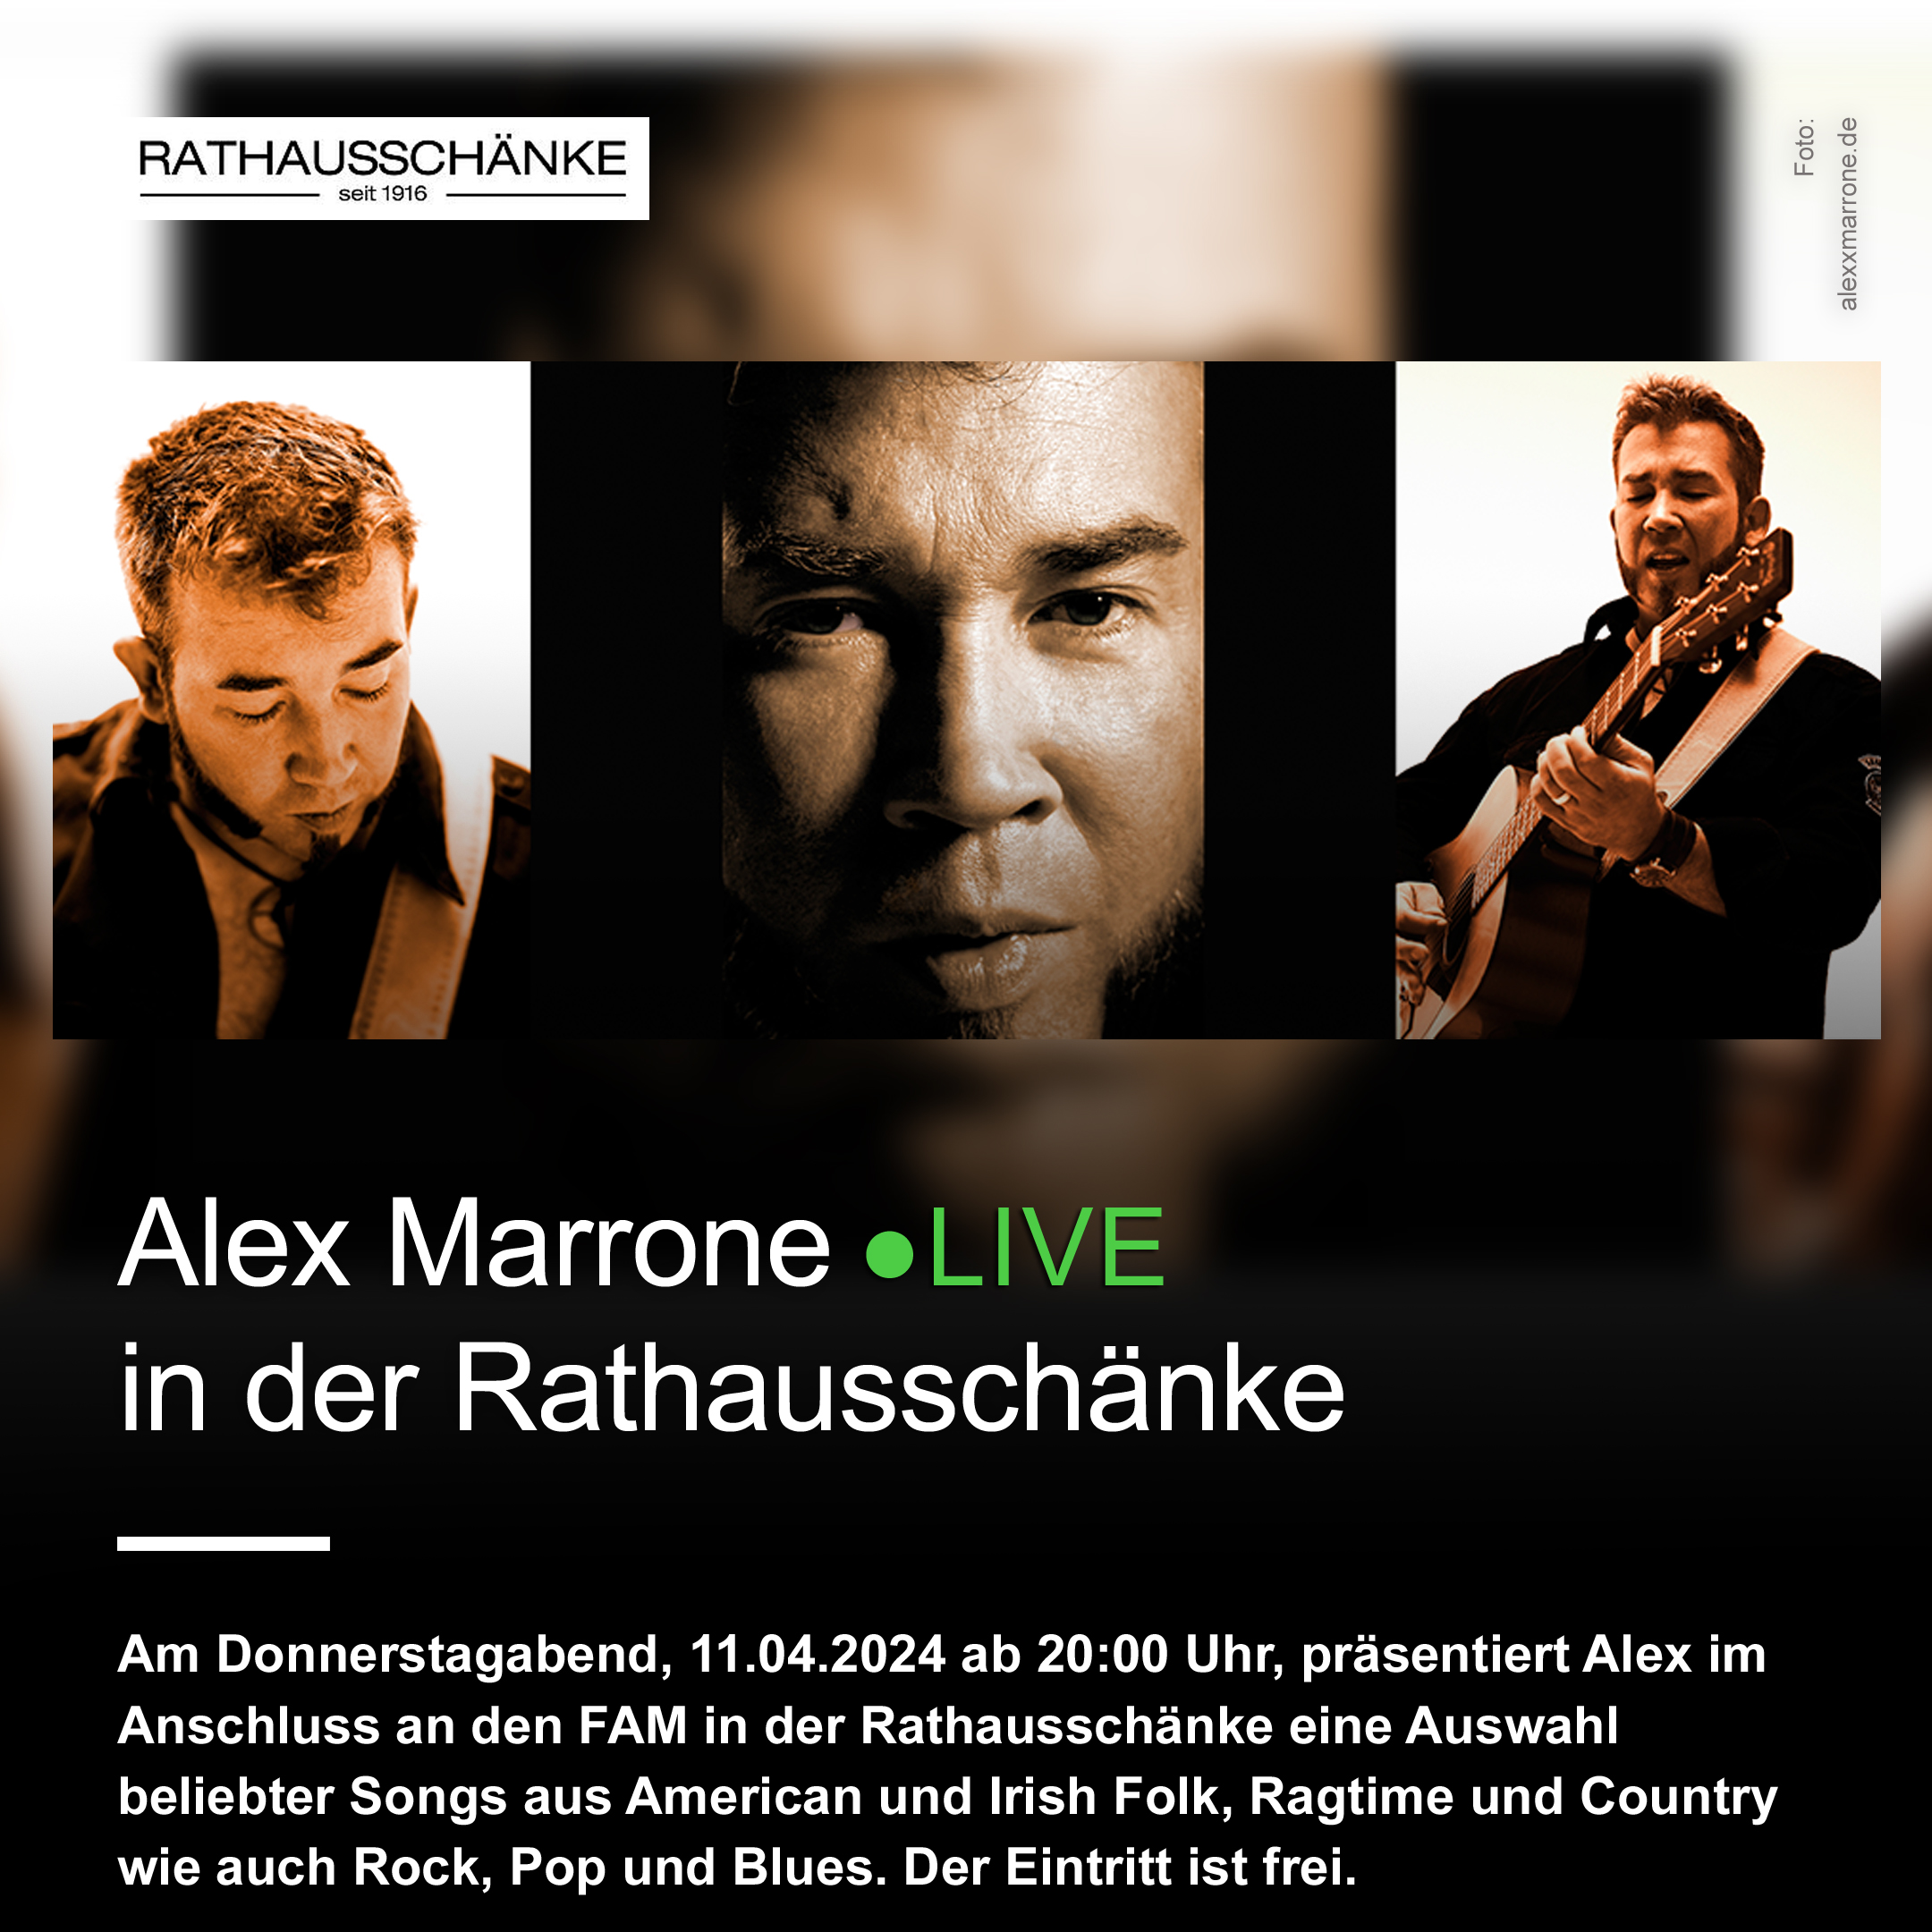 Mit einem LIVE-Musik programm nach dem Feierabendmarkt spielt Alex Marrone für unsere Gäste